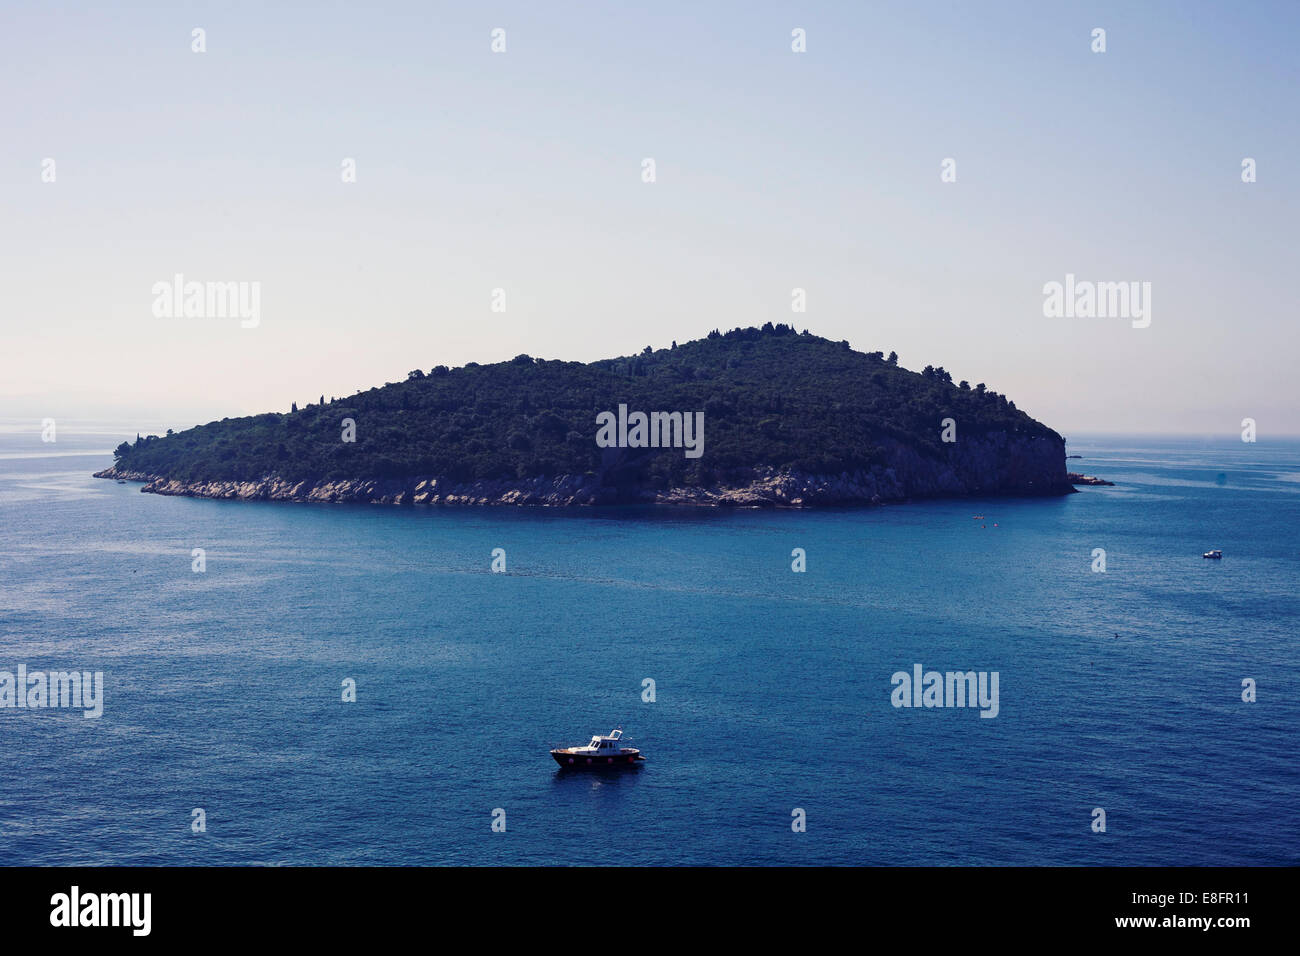 Croatia, Island off coast Stock Photo